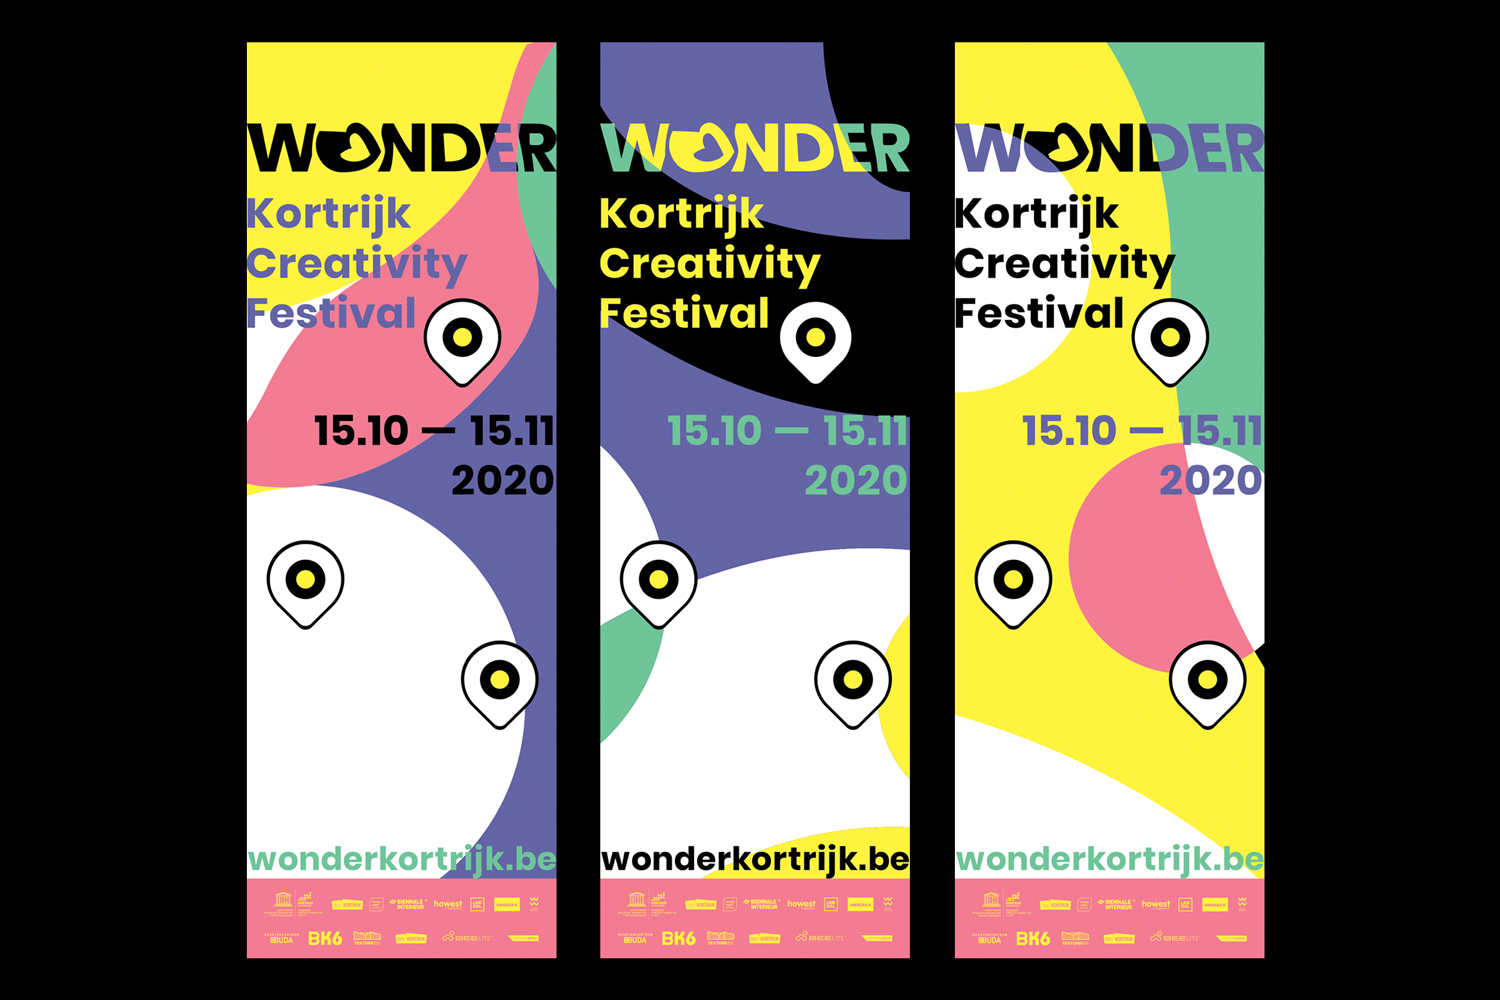 Wonder-Kortrijk-Creativity-Festival-identity-branding-Designregio-Kortrijk-Artist-Proof-Studio-Thomas-De-Ben-5.png